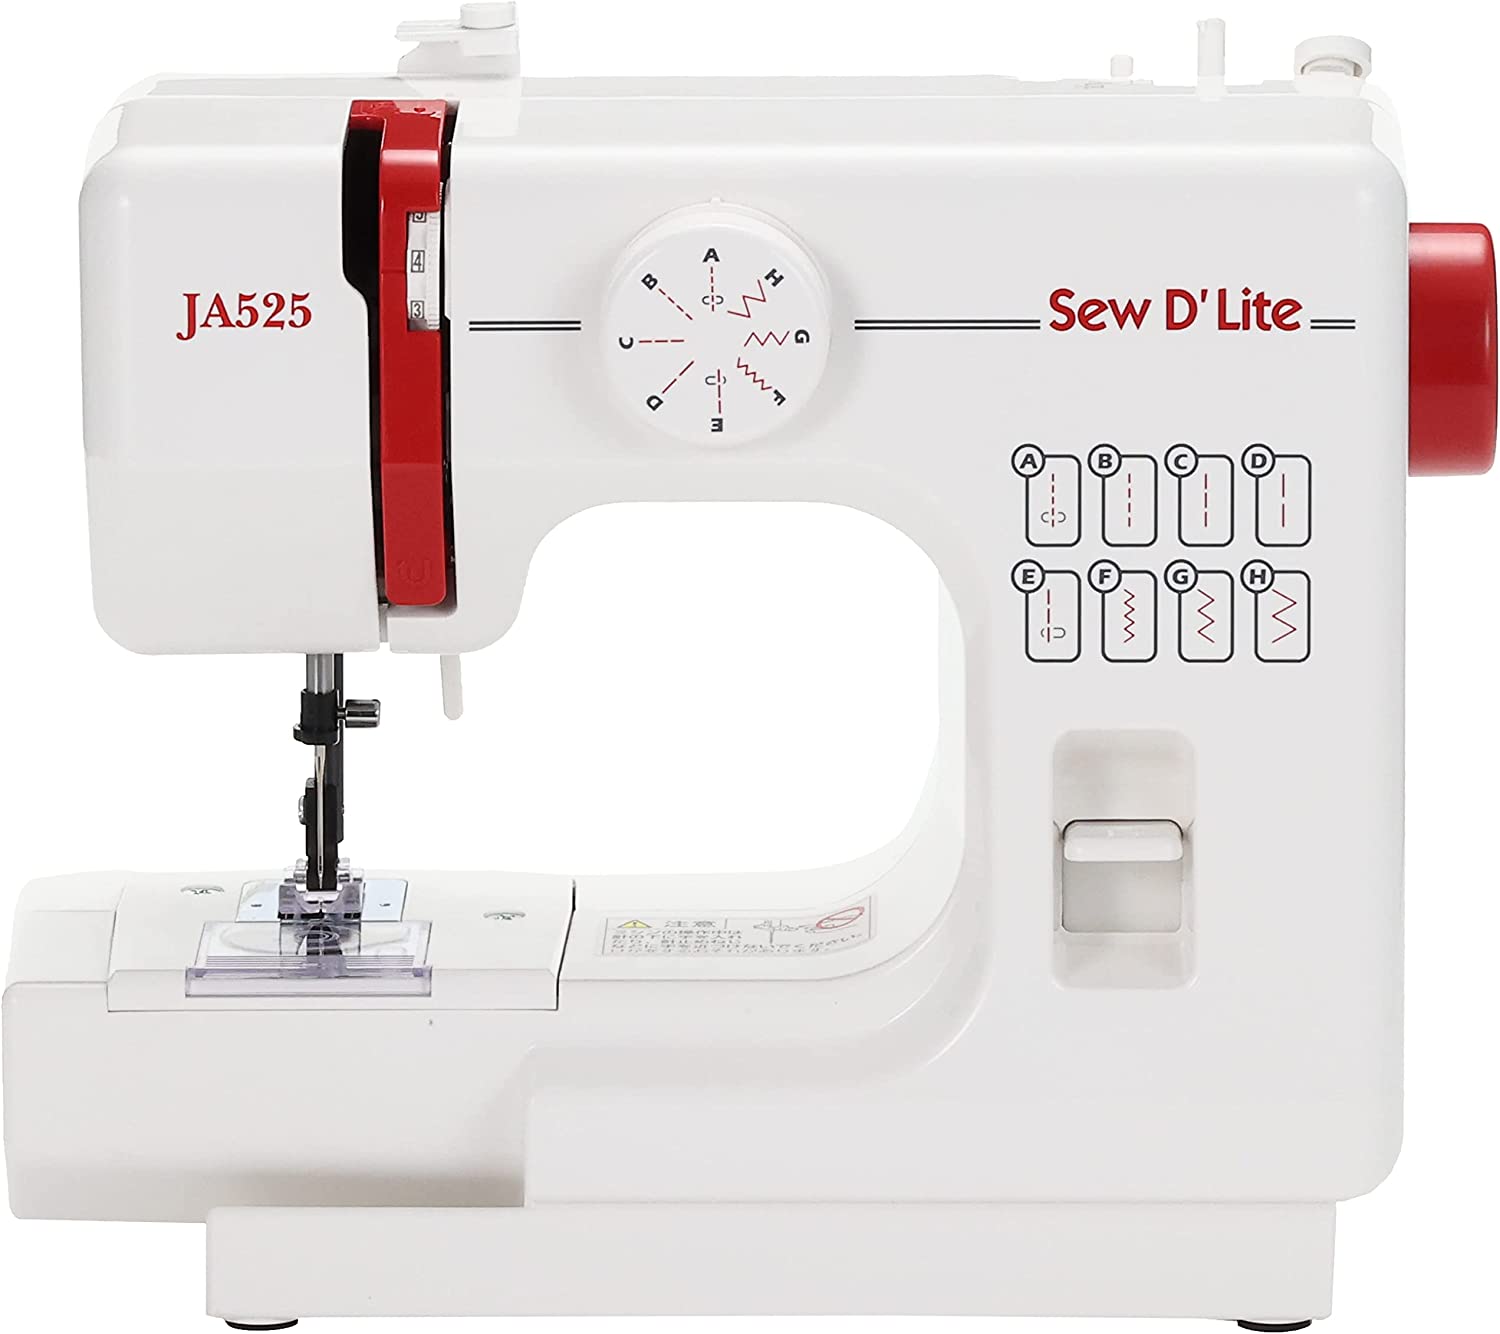 日本 車樂美 JANOME JA525 裁縫車 縫紉機 紅 家庭用 桌上型 8種車縫花樣 操作簡單